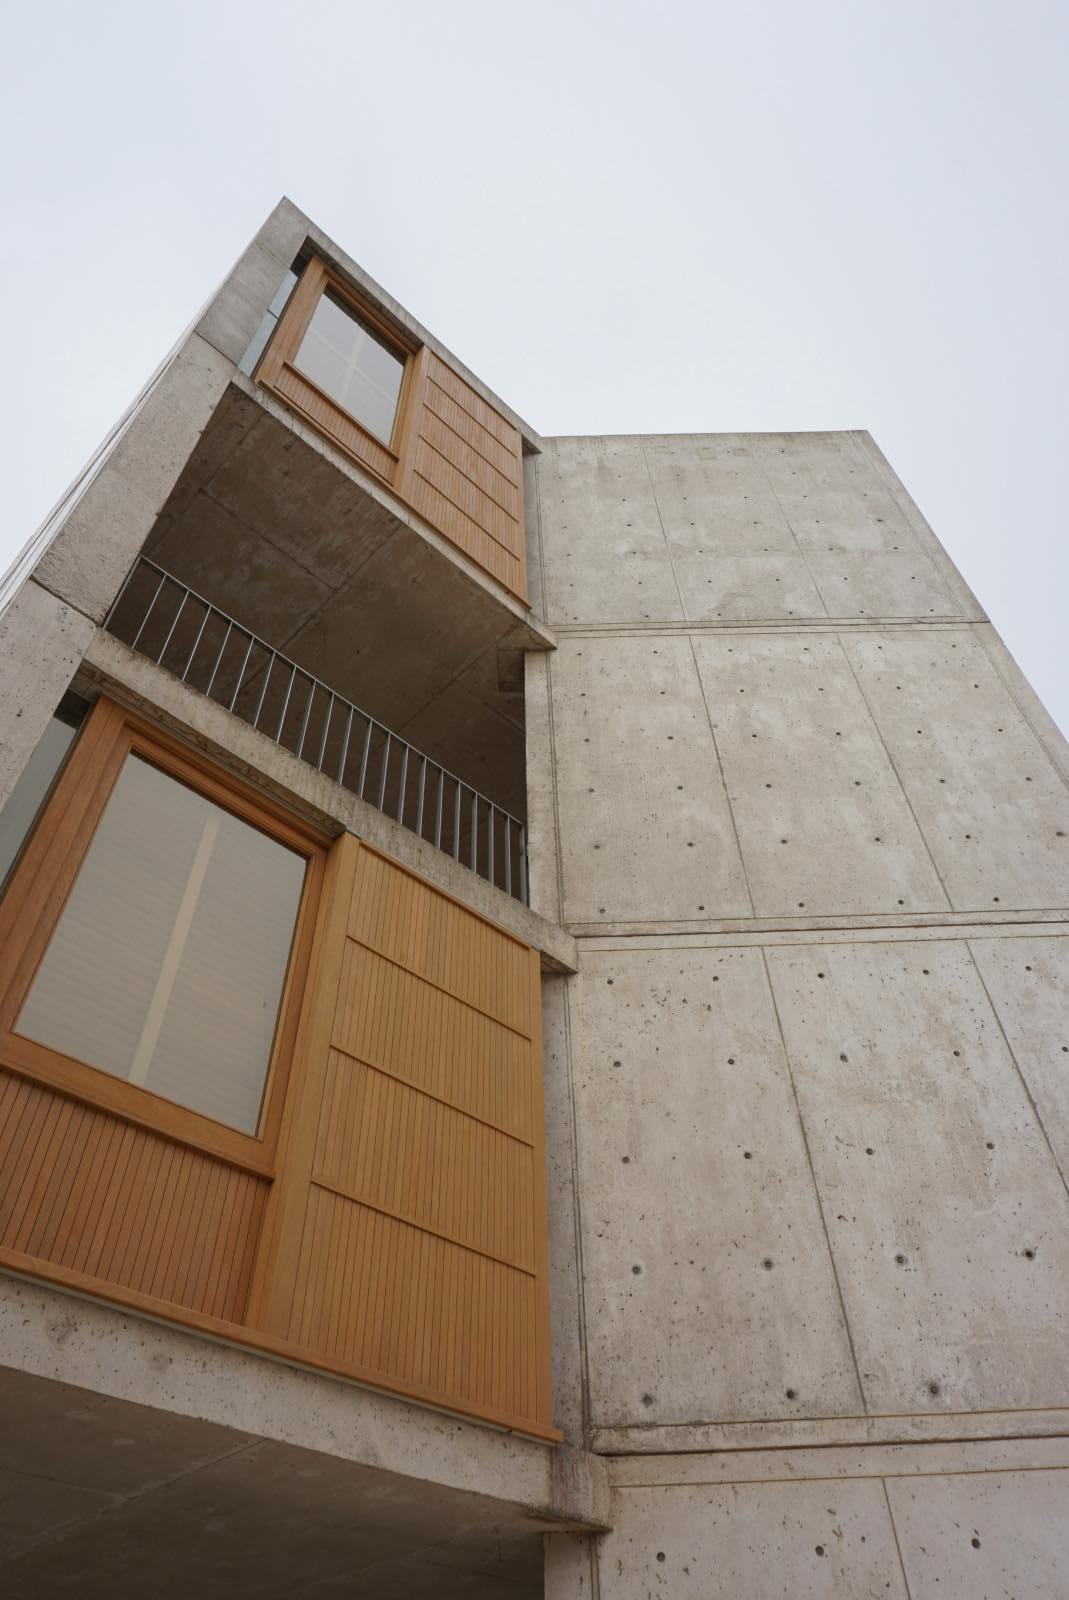 Salk Institute (Louis Kahn) arquitectura brutalista california